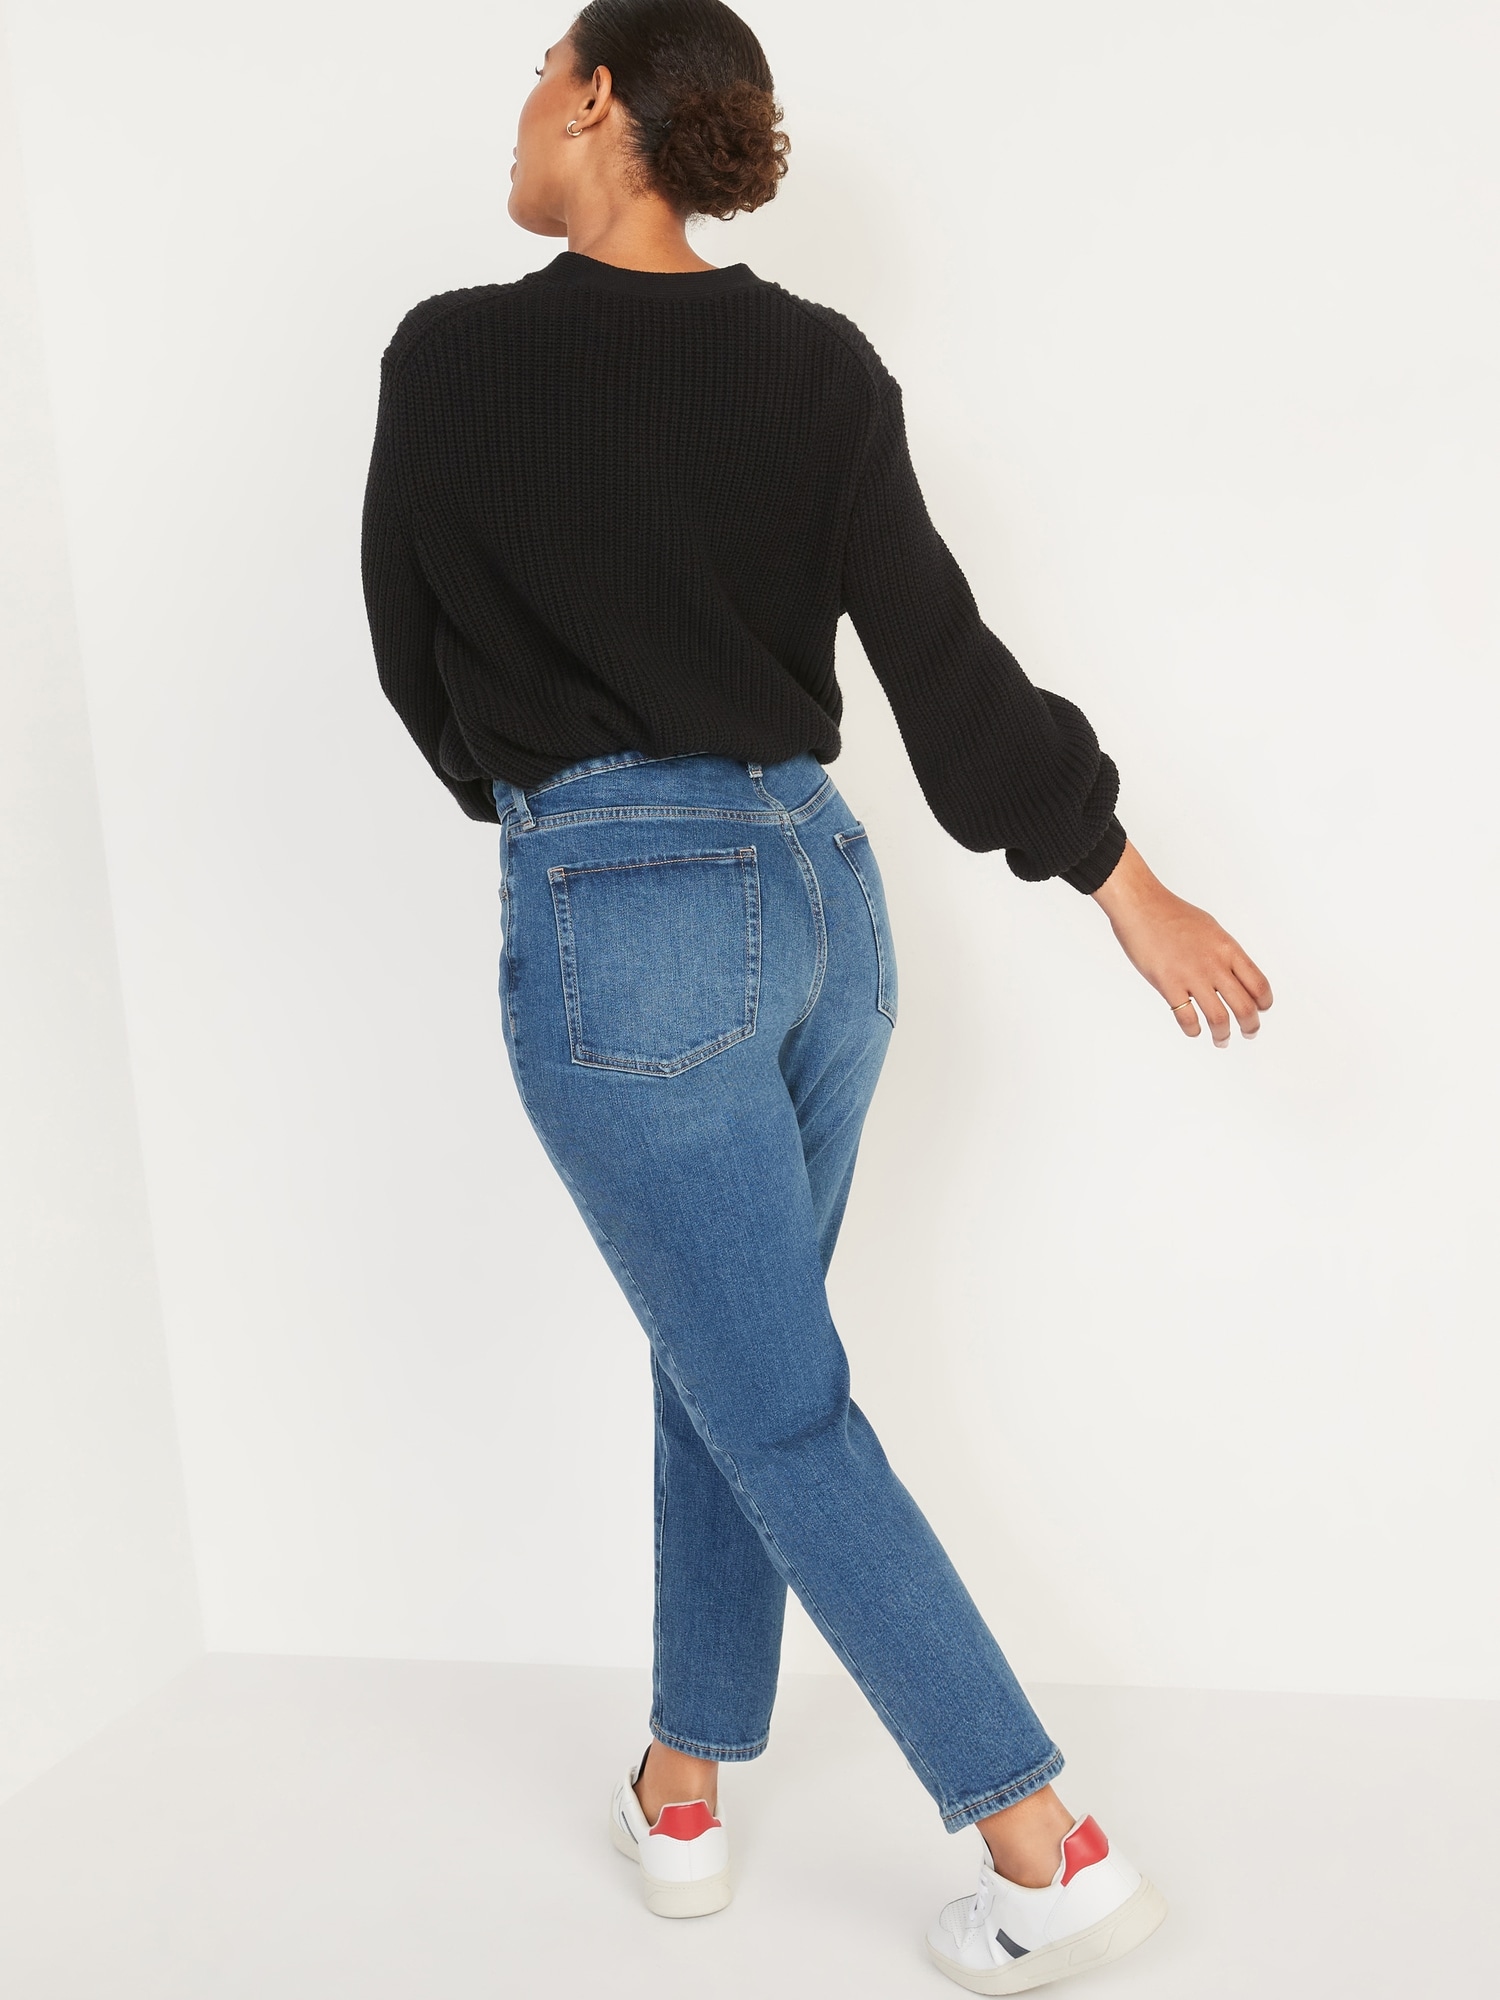 Jeans old navy curvy profile de segunda mano - GoTrendier